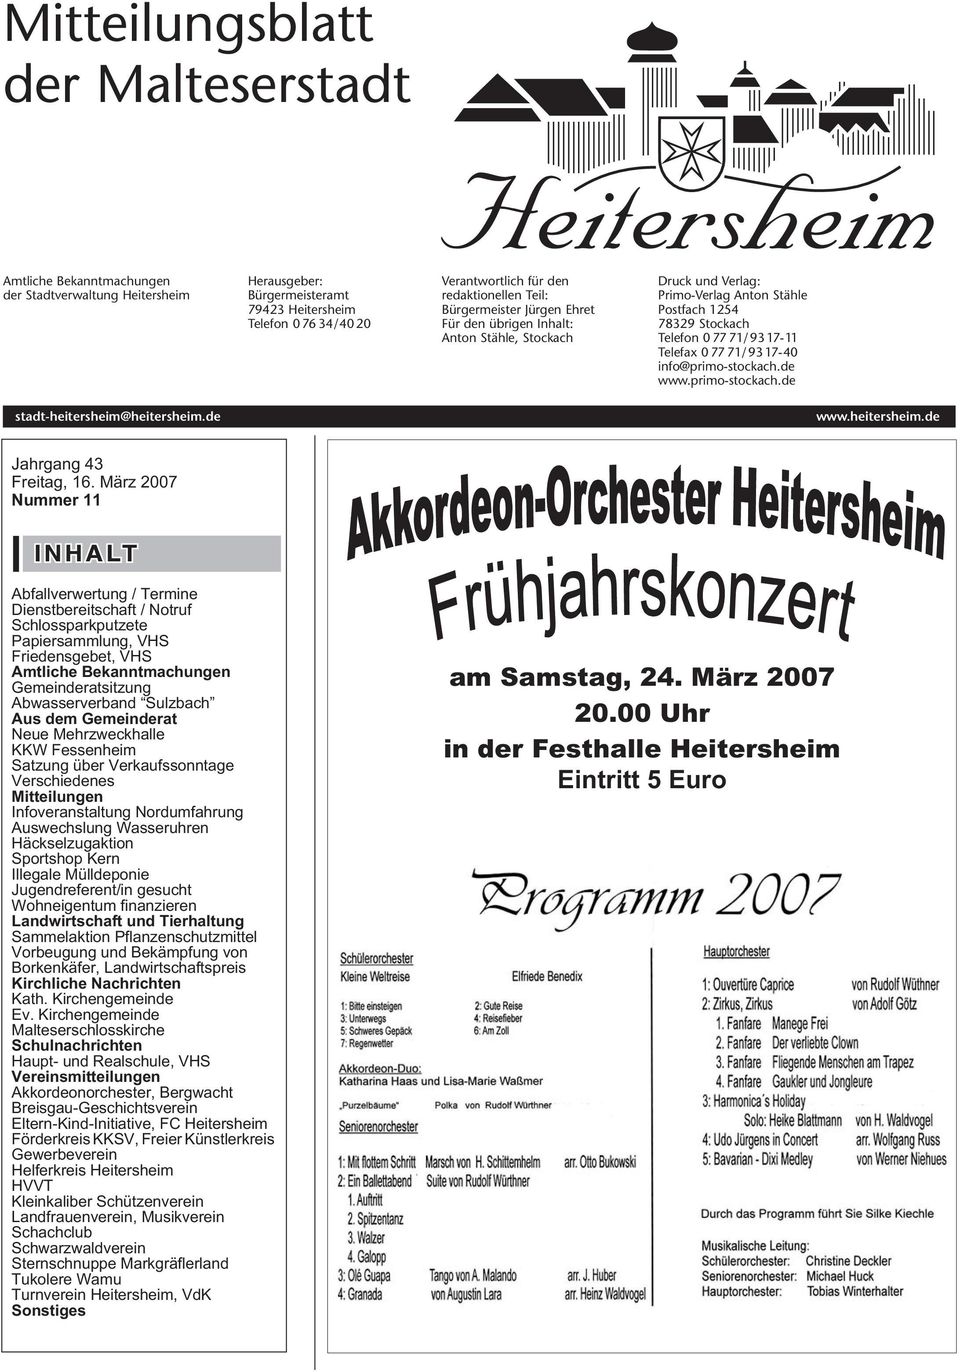 info@primo-stockach.de www.primo-stockach.de stadt-heitersheim@heitersheim.de www.heitersheim.de Jahrgang 43 Freitag, 16.